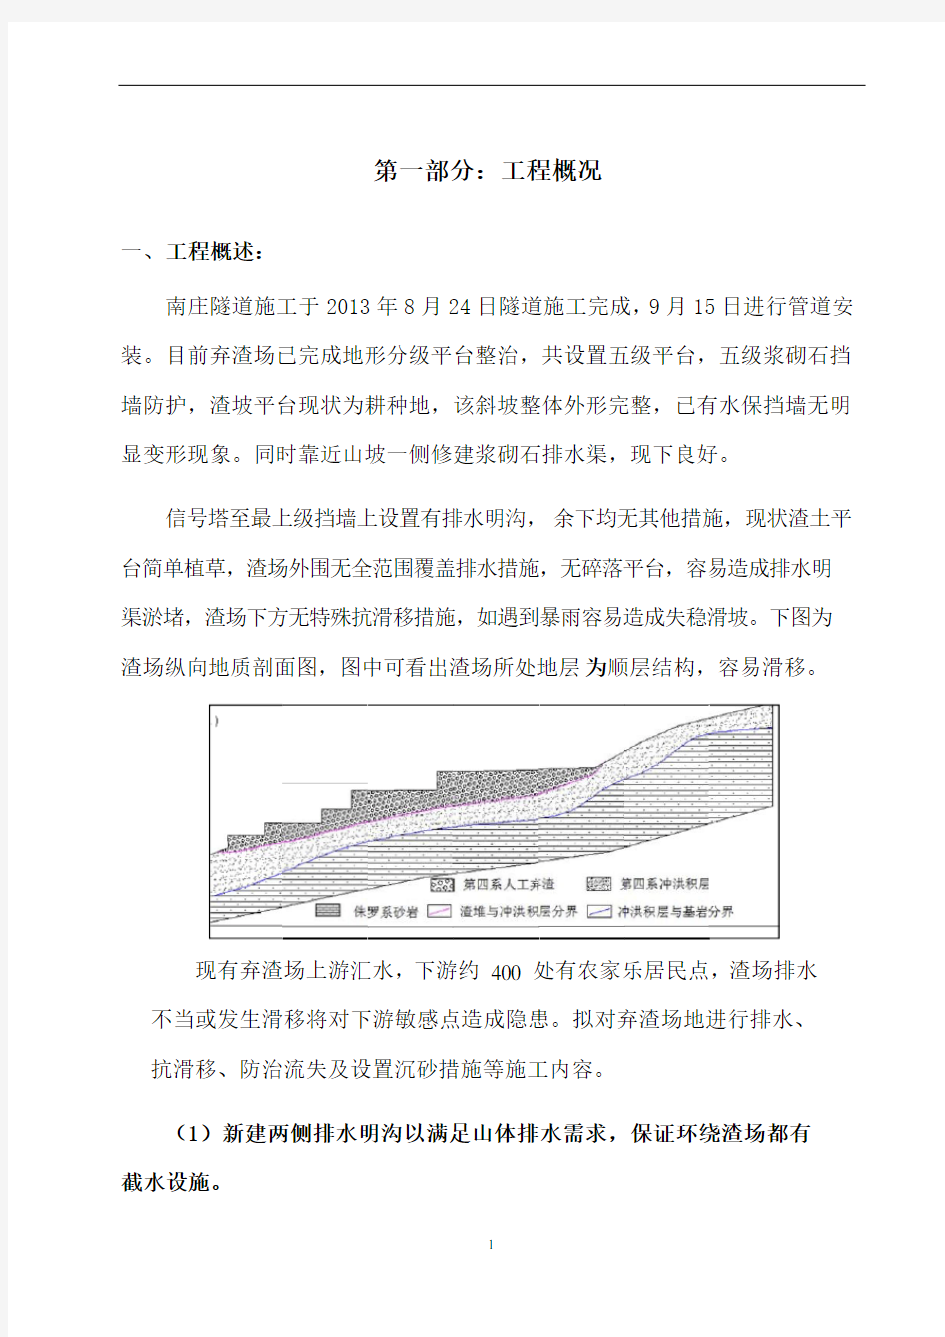 陕京三线南庄隧道进口弃渣场水土保持工程施工方案